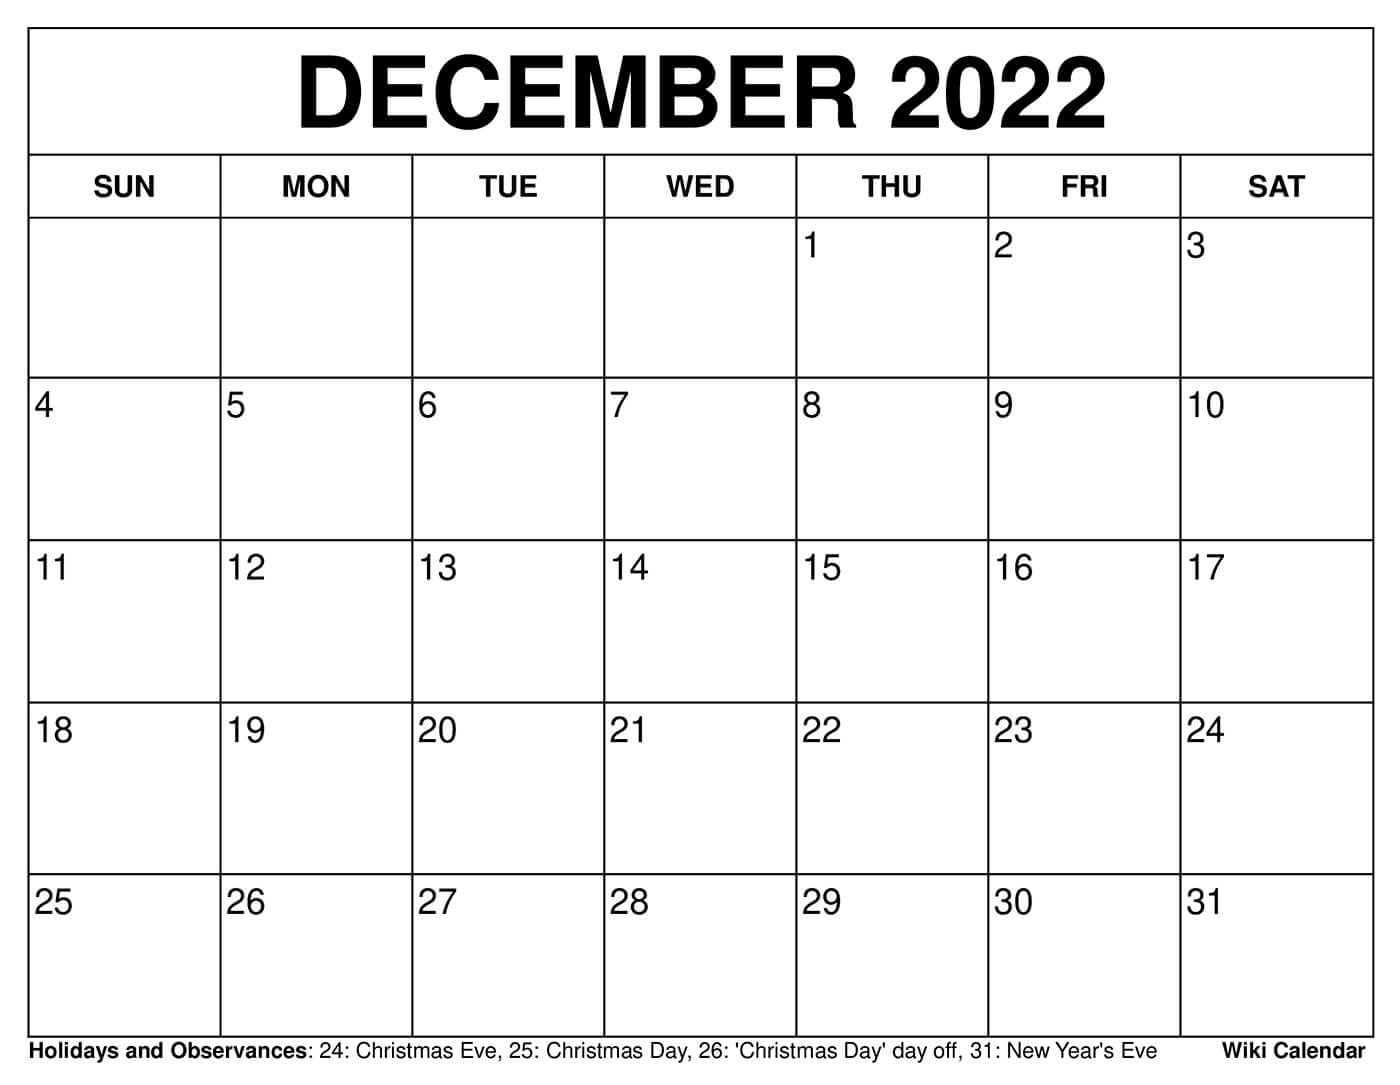 Nov Dec 2022 Calendar Free Printable December 2022 Calendars - Wiki Calendar